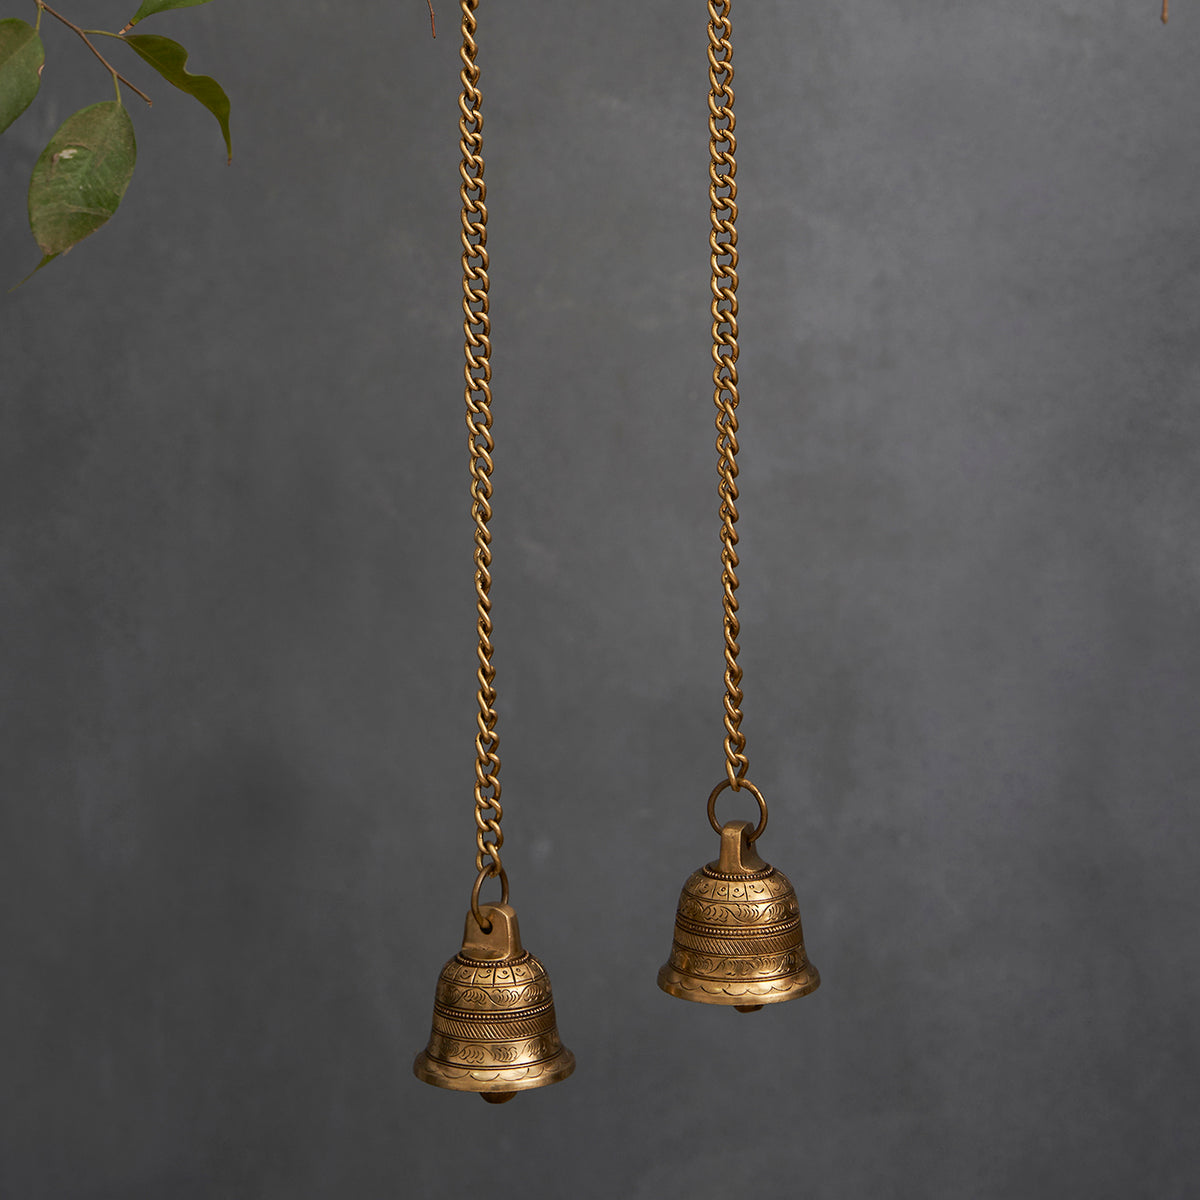 Brass Antique Hanging Bell For Wall Door Mandir Temple Pooja (Set of 2)